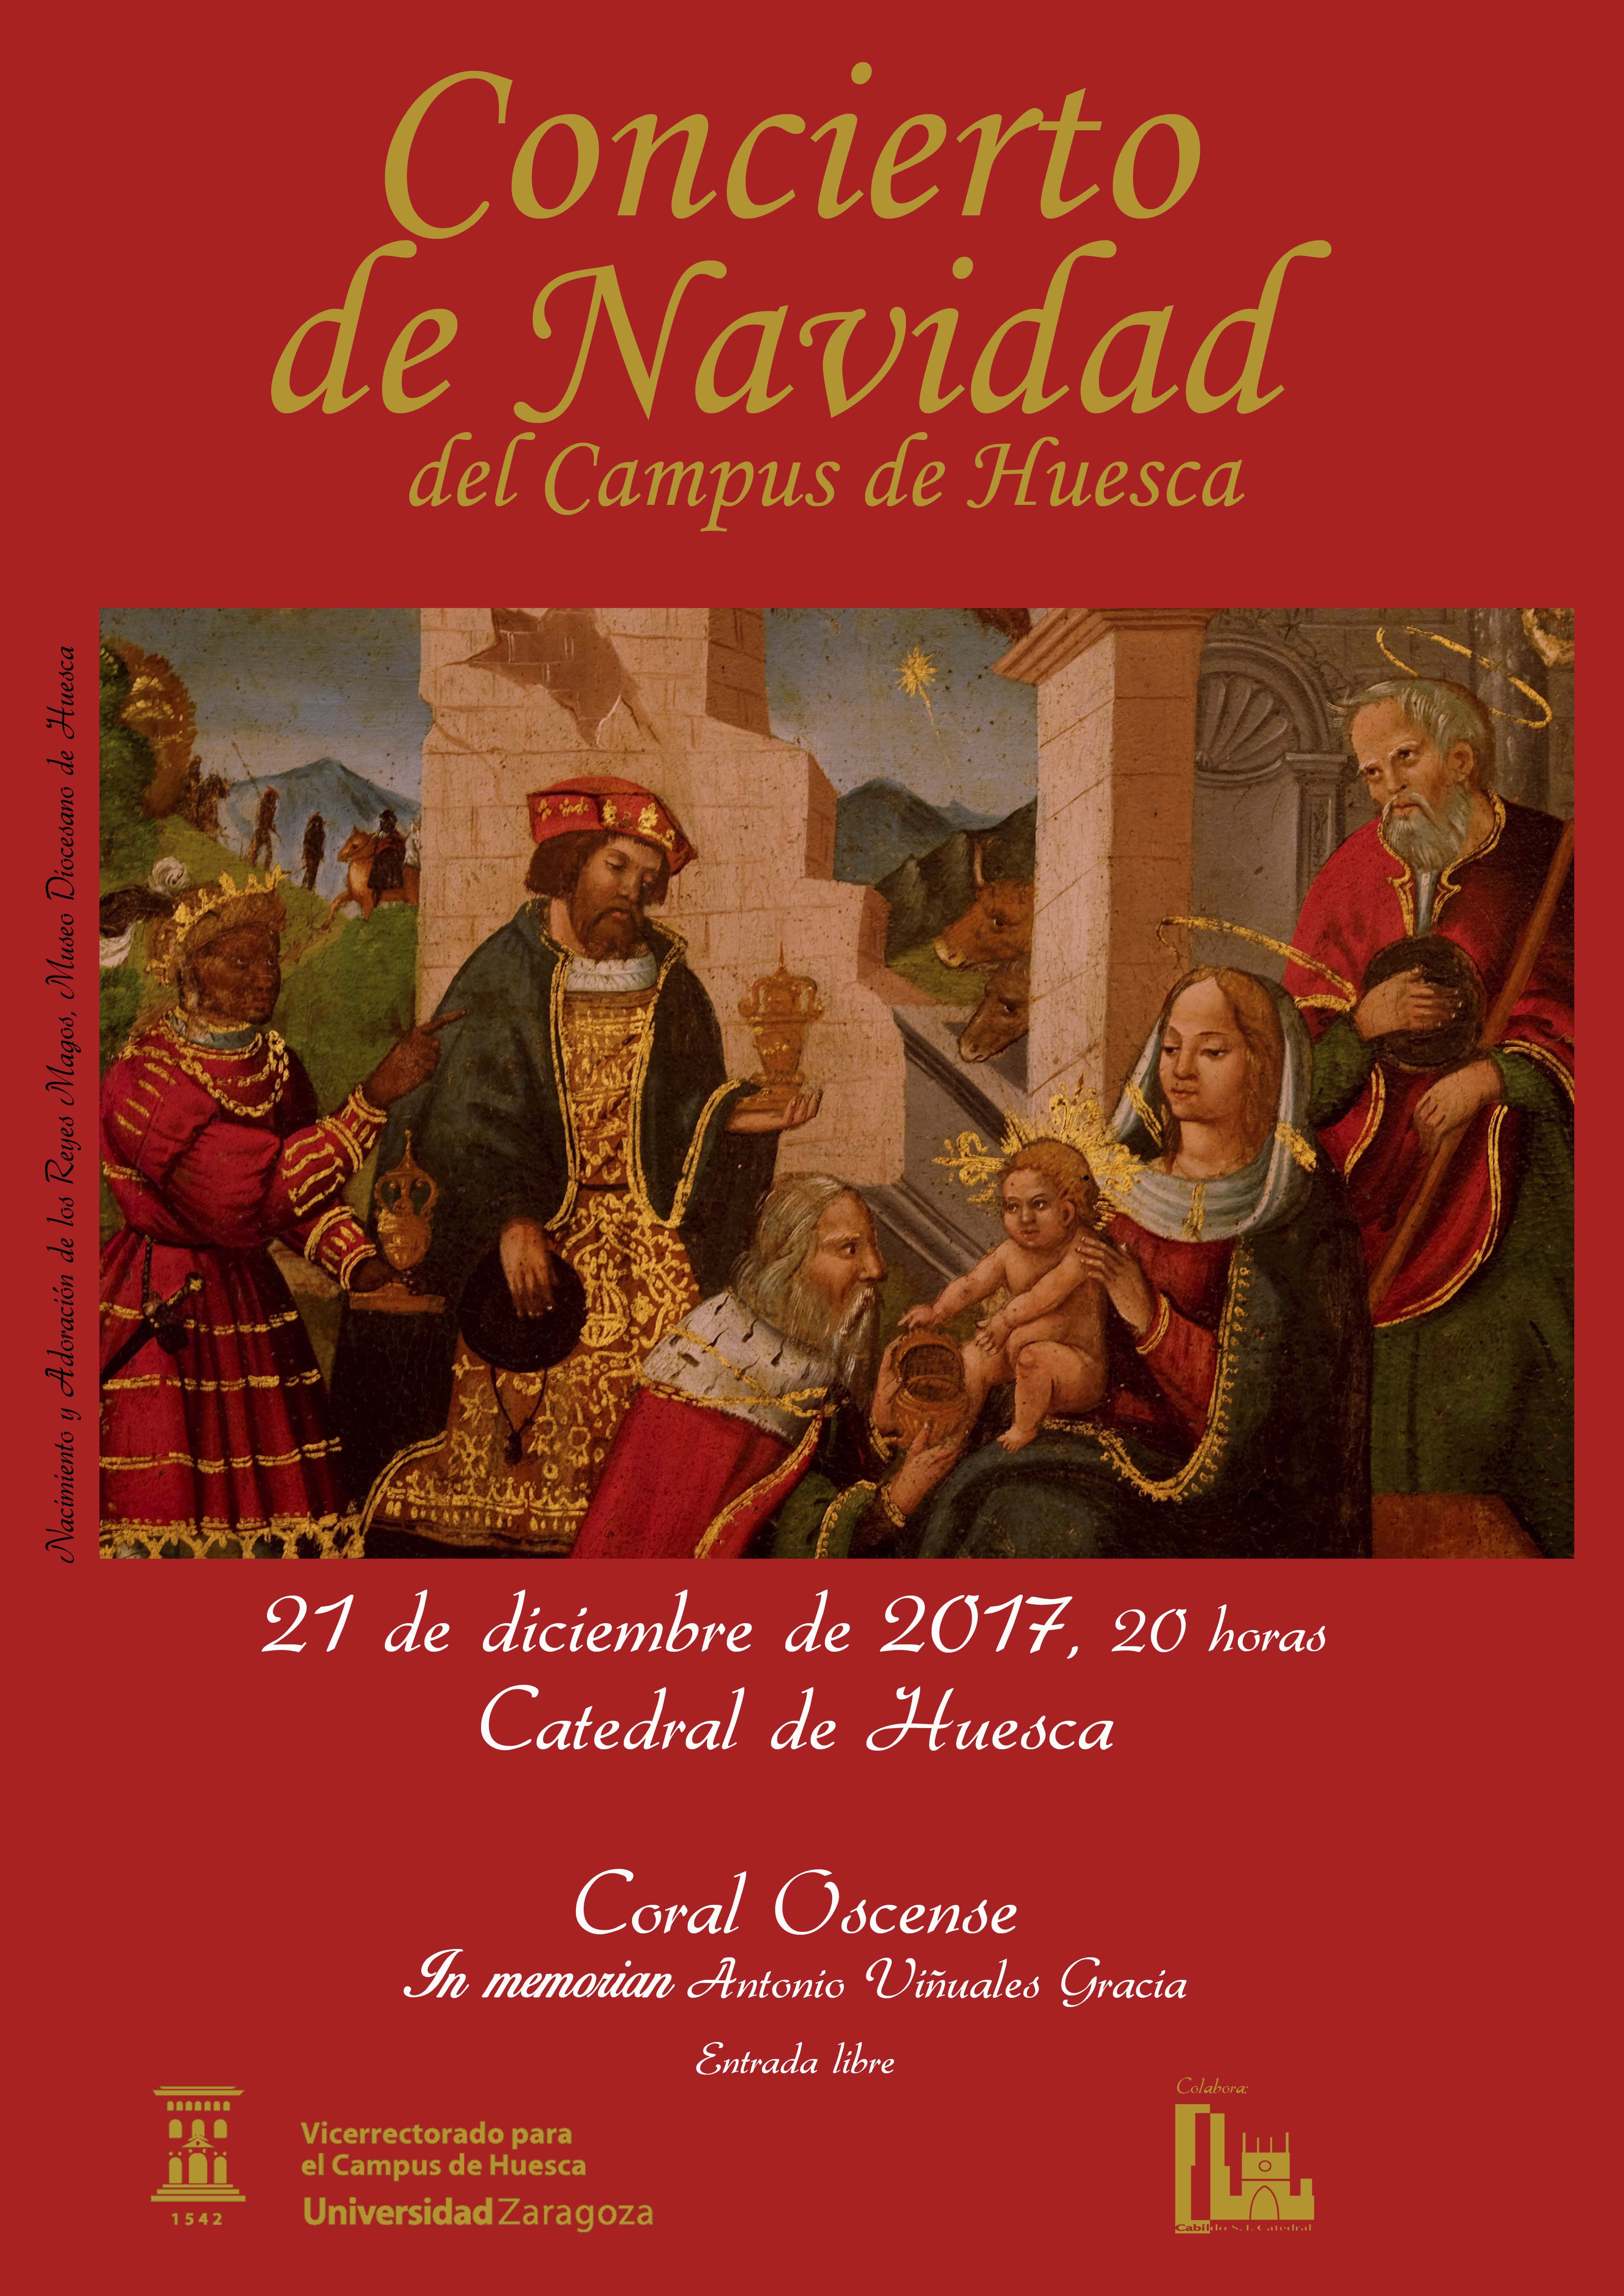 Cartel concierto de Navidad del Campus de Huesca